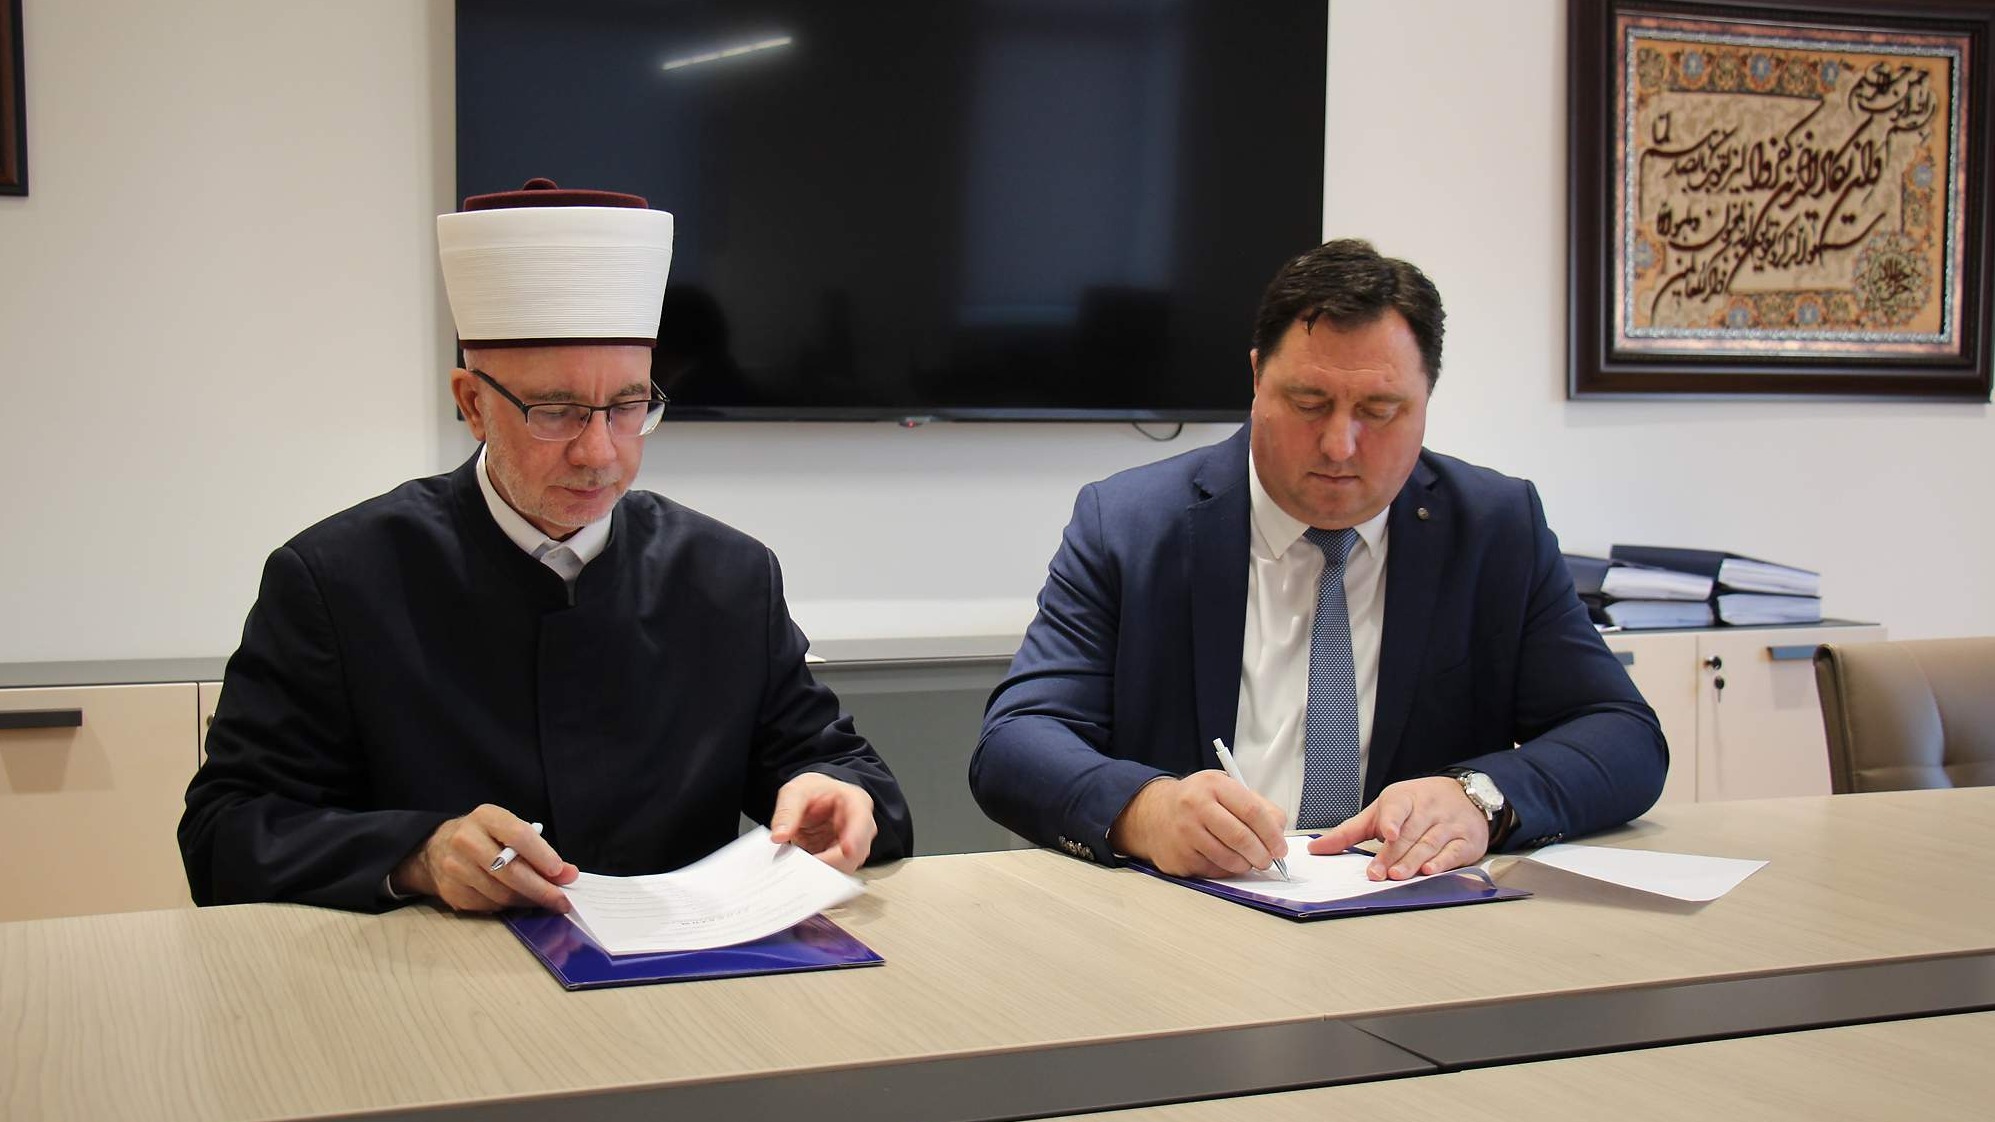 Potpisan Sporazum o saradnji i sufinansiranju dopisničke mreže na području Muftijstva tuzlanskog